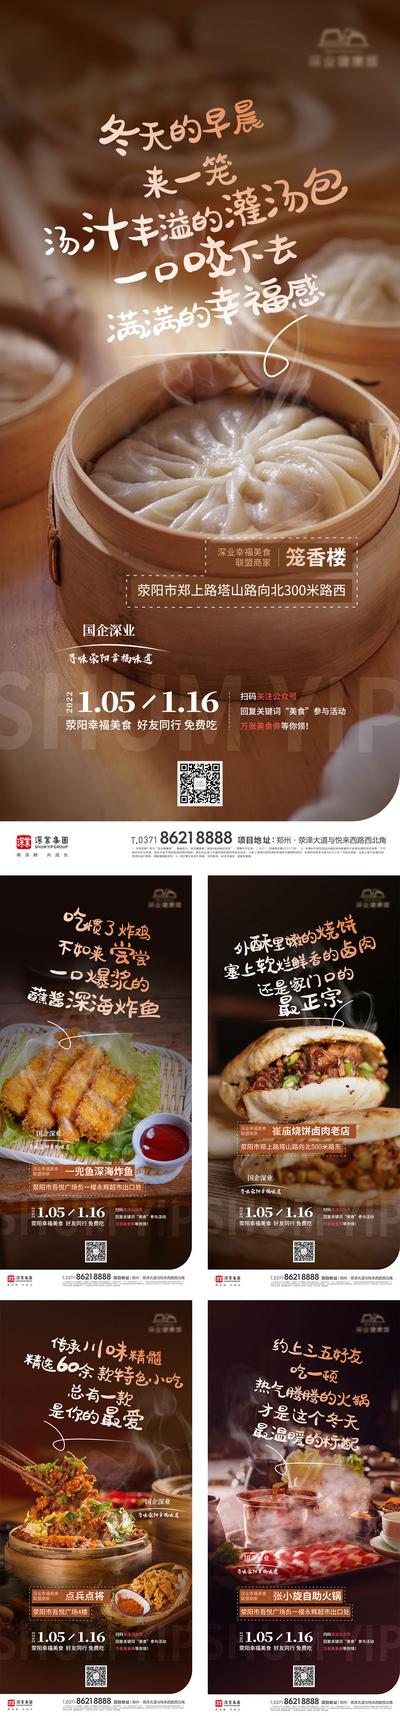 南门网 海报 地产 美食 烧烤 包子 卤肉 串串 川菜 烤鱼 人间烟火